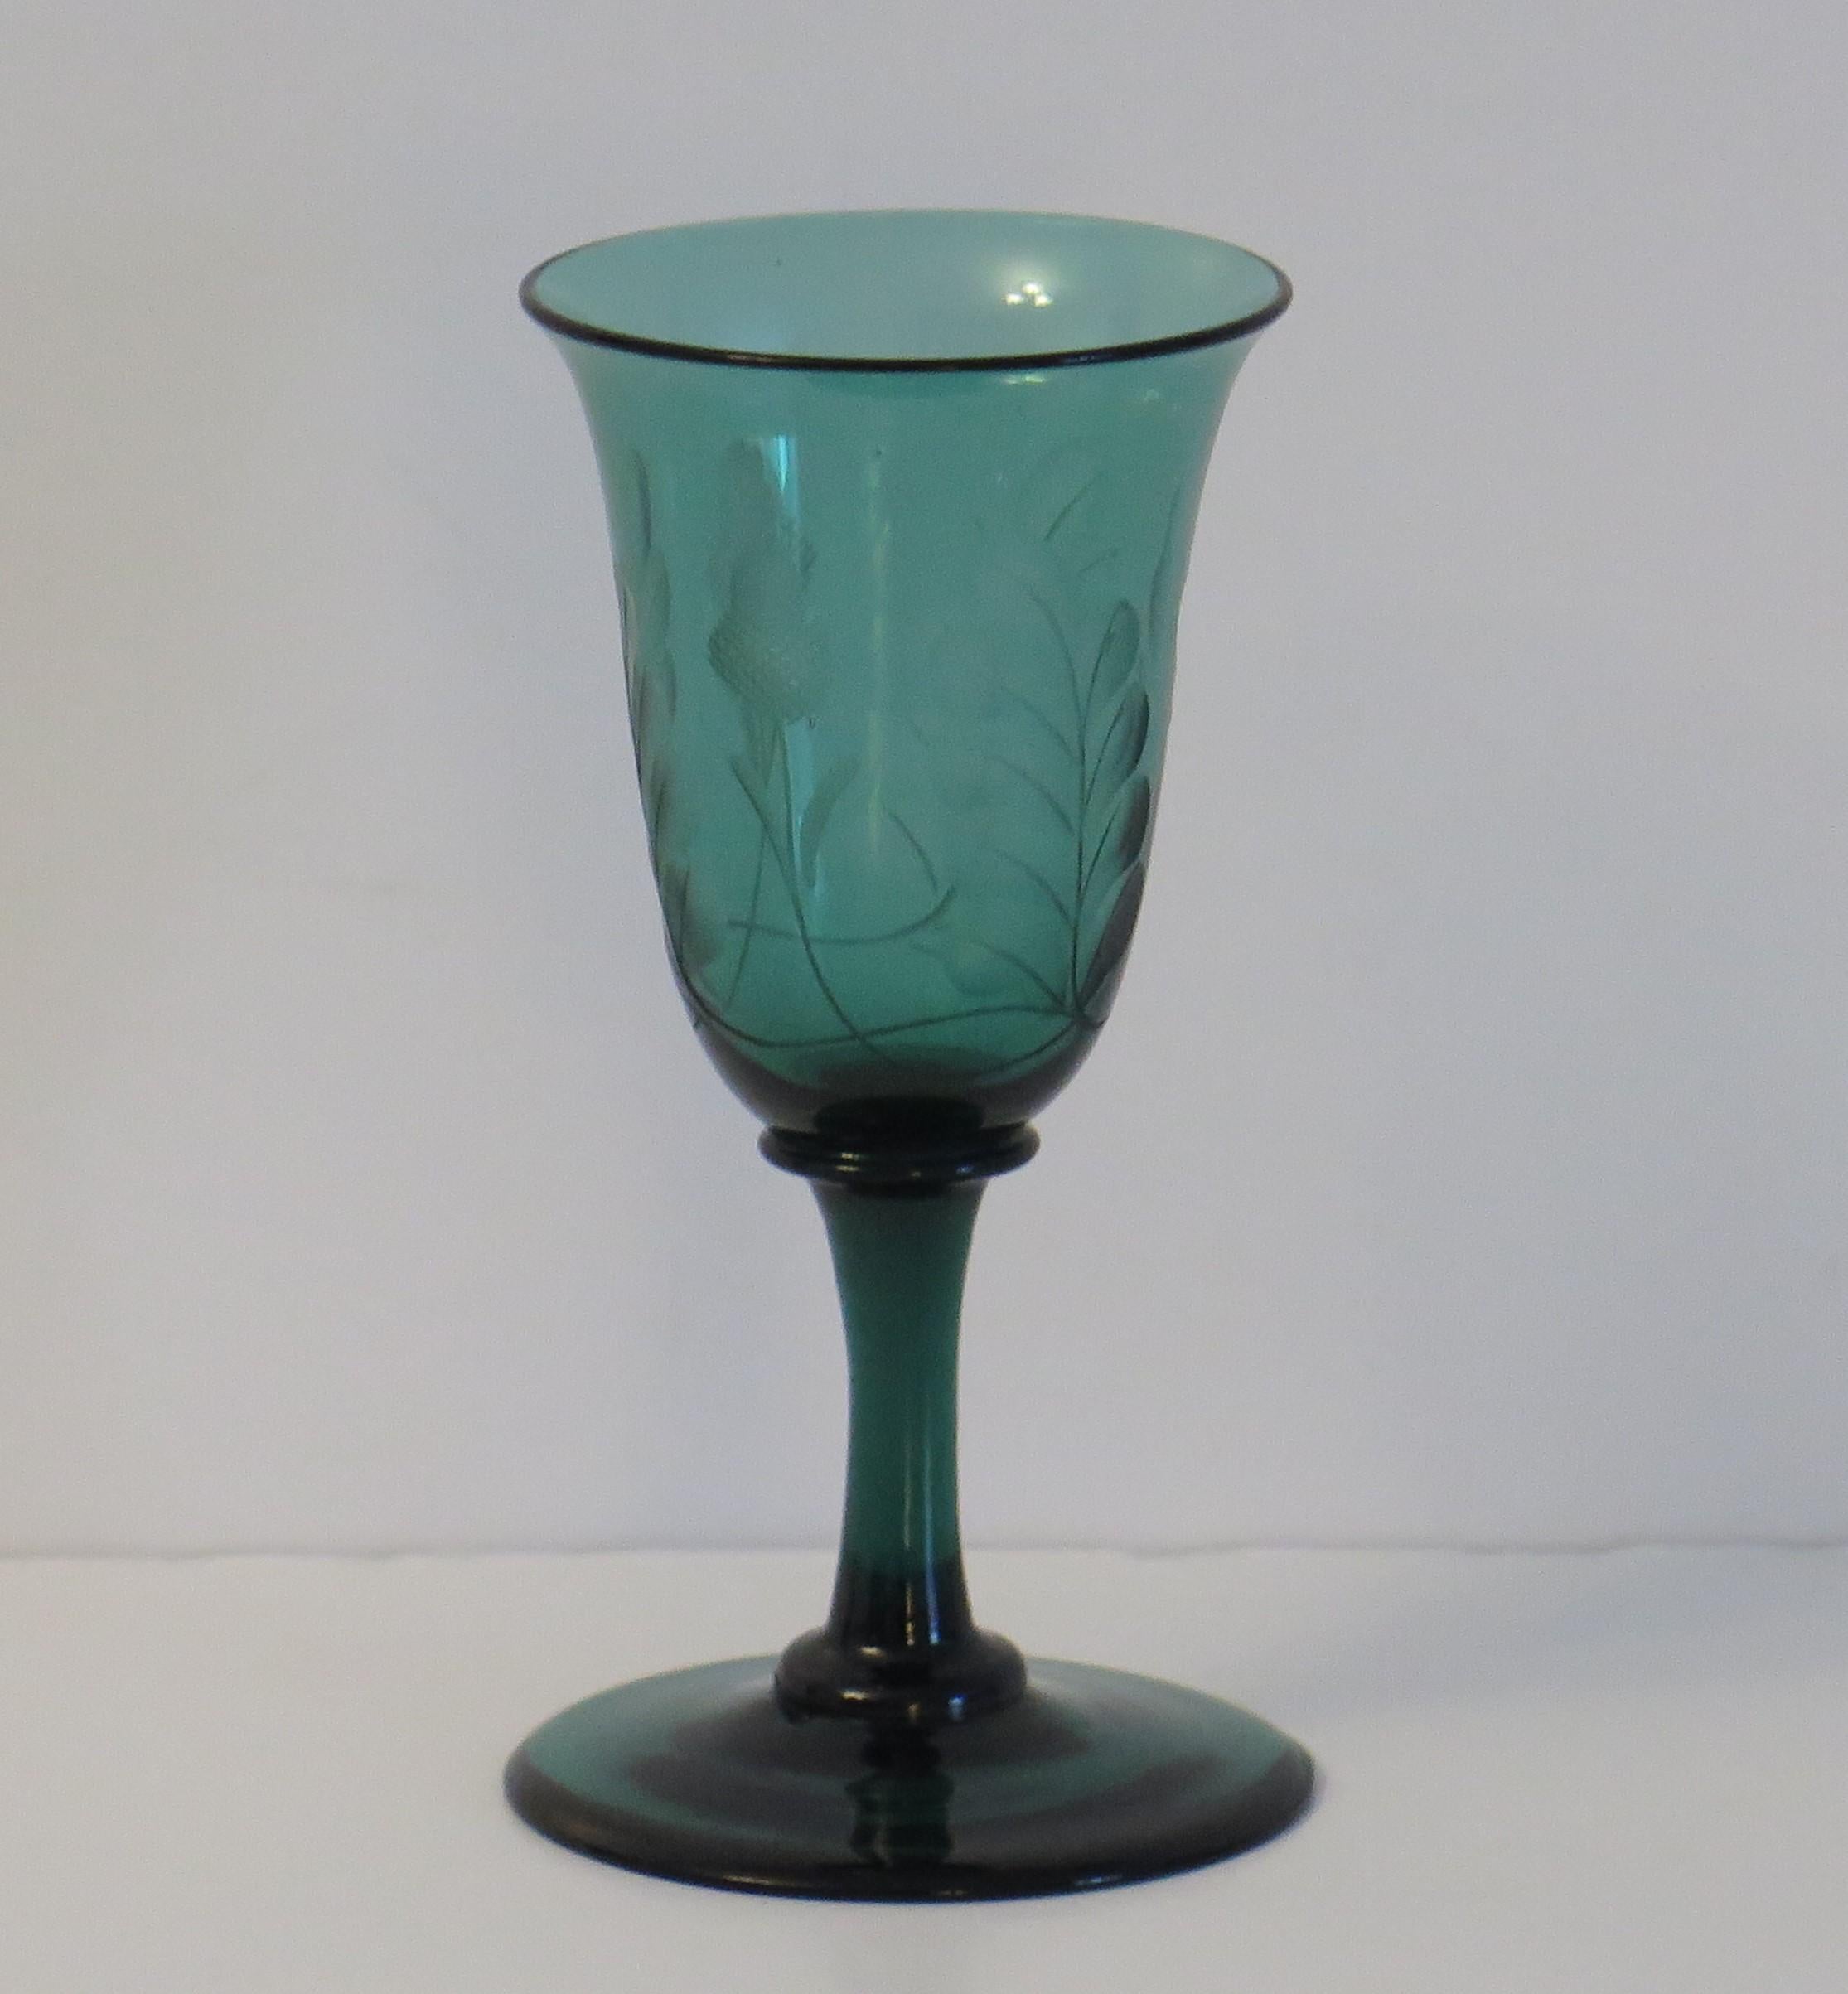 Il s'agit d'un excellent exemple de verre à vin vert de Bristol, soufflé à la main, du début du XIXe siècle, avec une coupe gravée de glands et de feuilles de chêne, que nous datons de la période de la Régence de George 111, vers 1815.

Ce verre